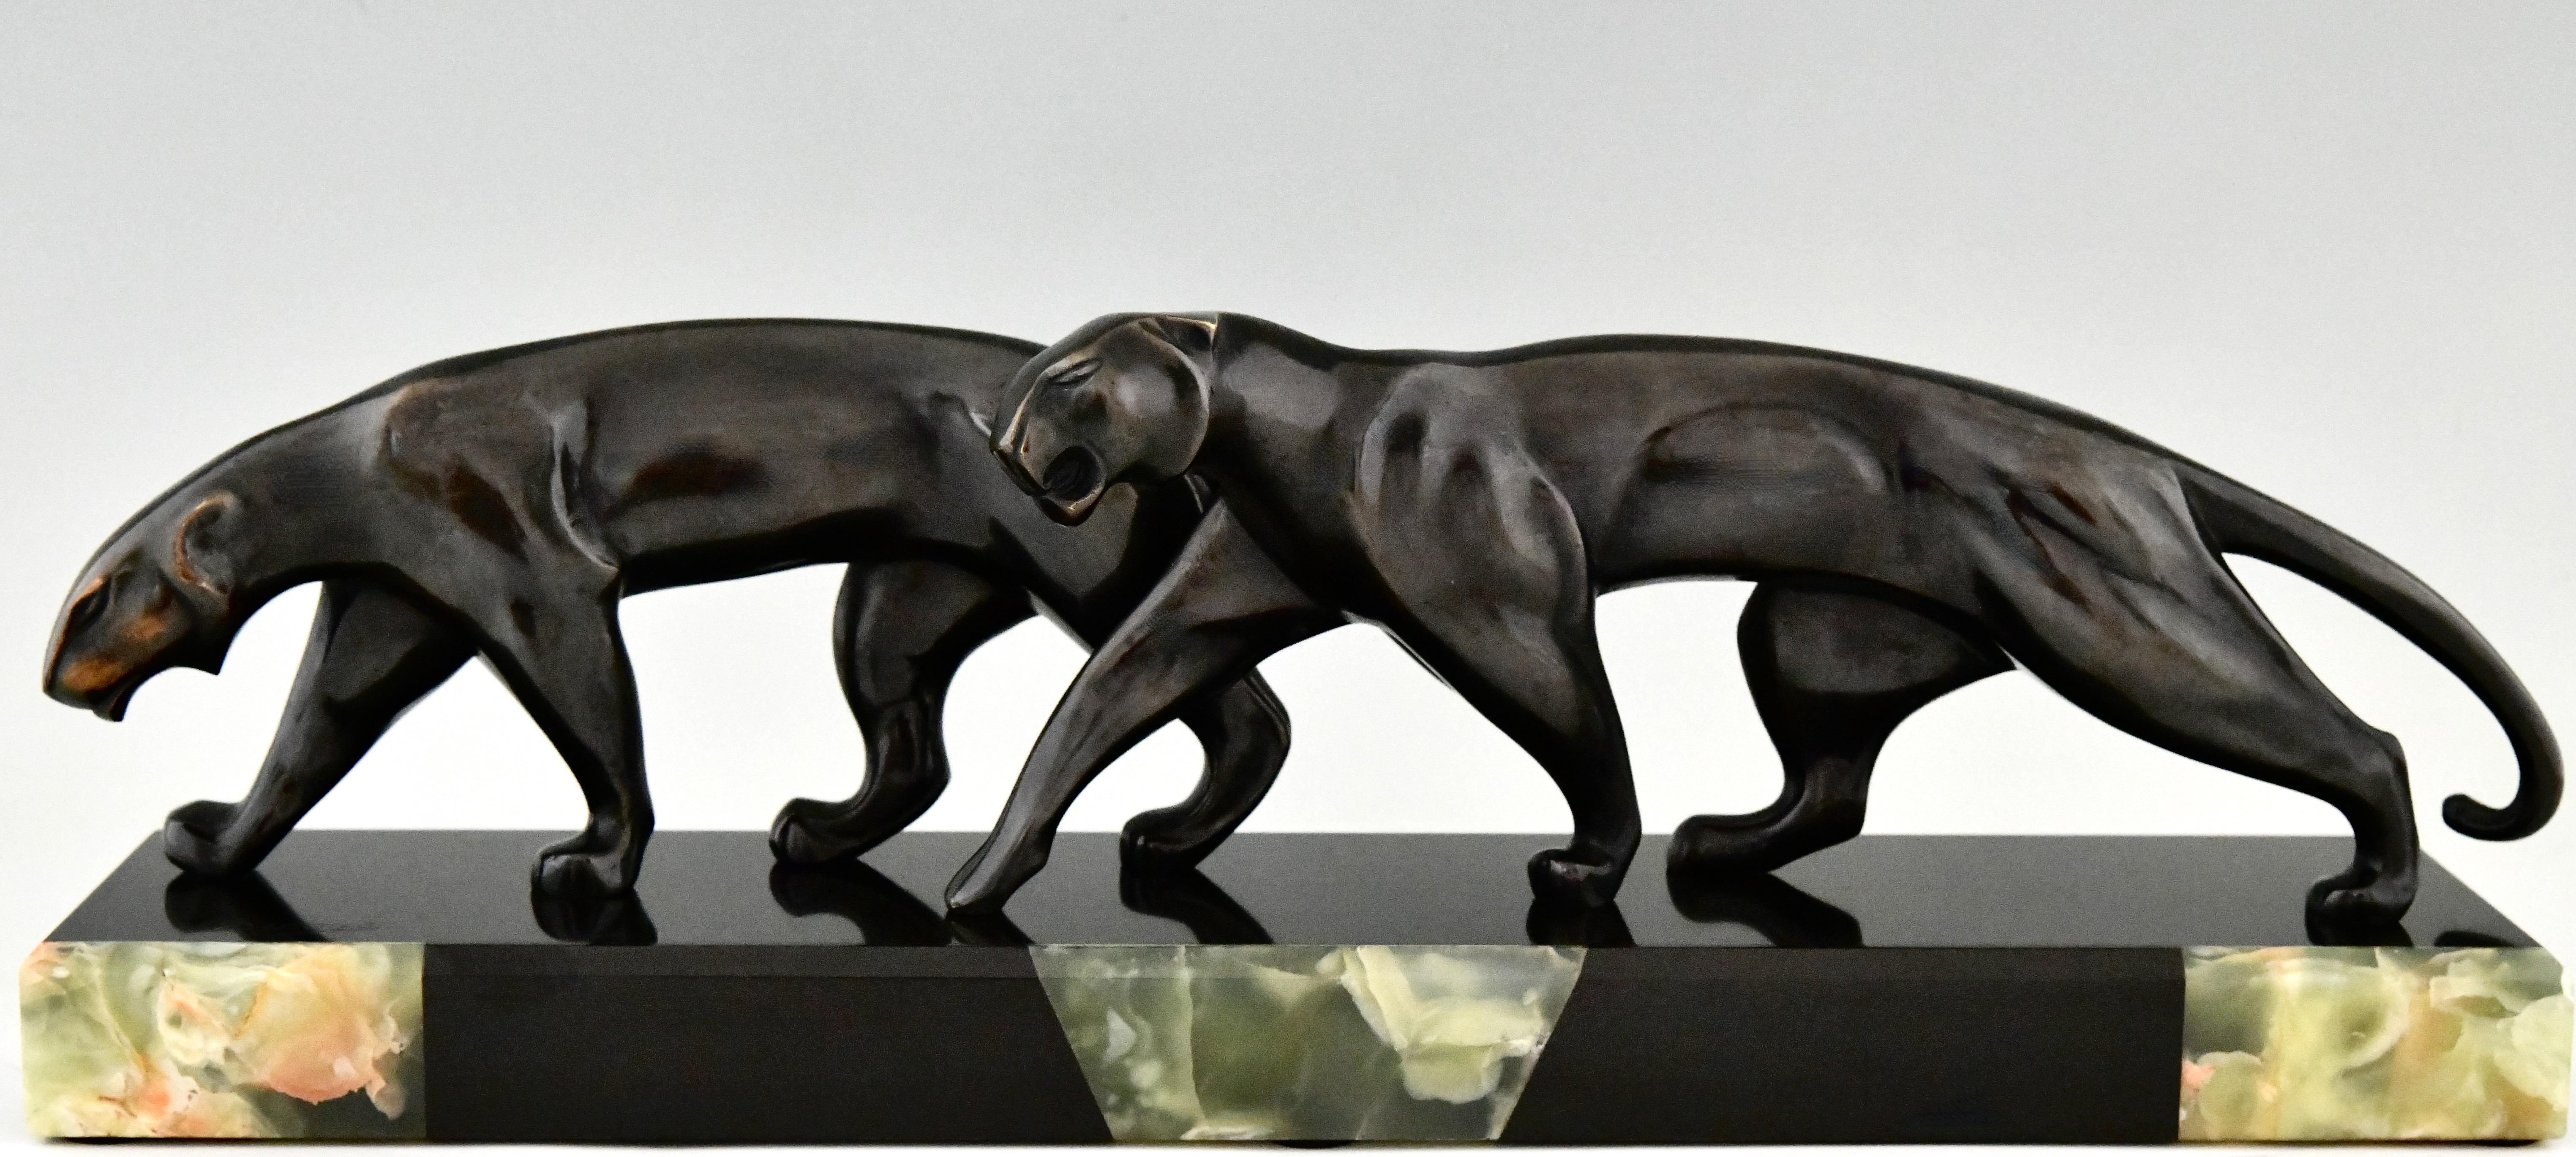 Art Deco Bronze-Skulptur zwei Panther signiert von Michel Decoux.
Bronze, schwarz patiniert, auf schwarzem Marmorsockel mit grüner Onyxeinlage. 
Frankreich 1920. 
Dieses Modell ist auf Seite 294 des Buches abgebildet
Dictionnaire illustré des